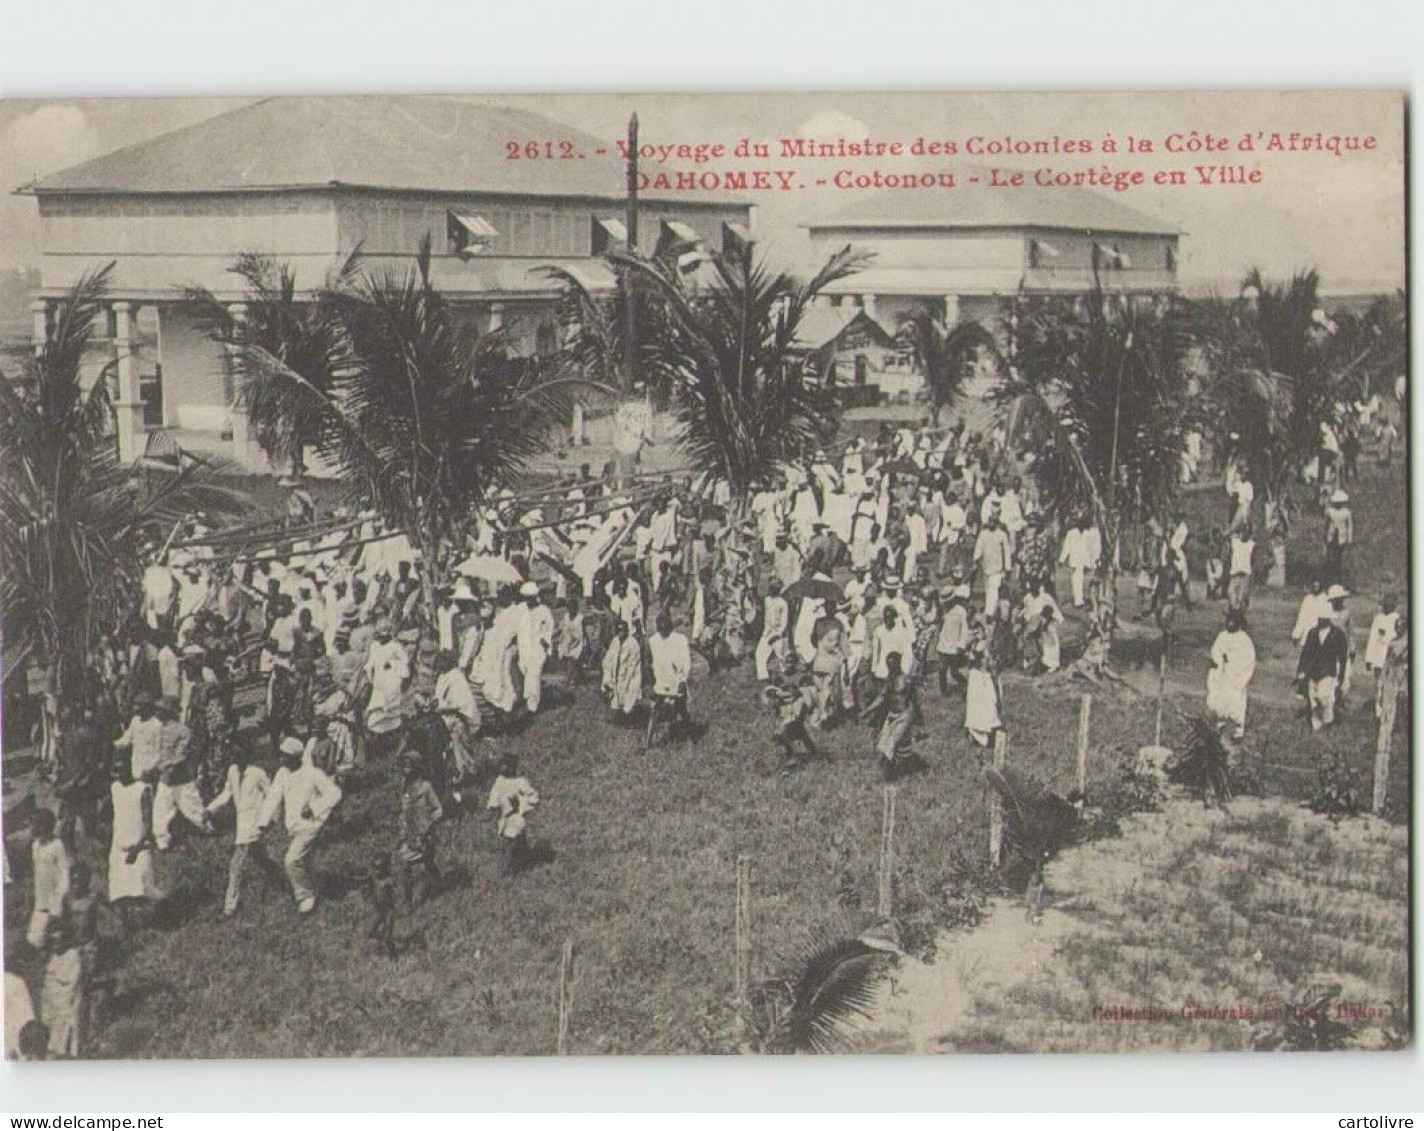 Voyage Du Ministre Des Colonies. DAHOMEY . Cotonou Le Cortège En Ville (Fortier 2612) - Dahomey